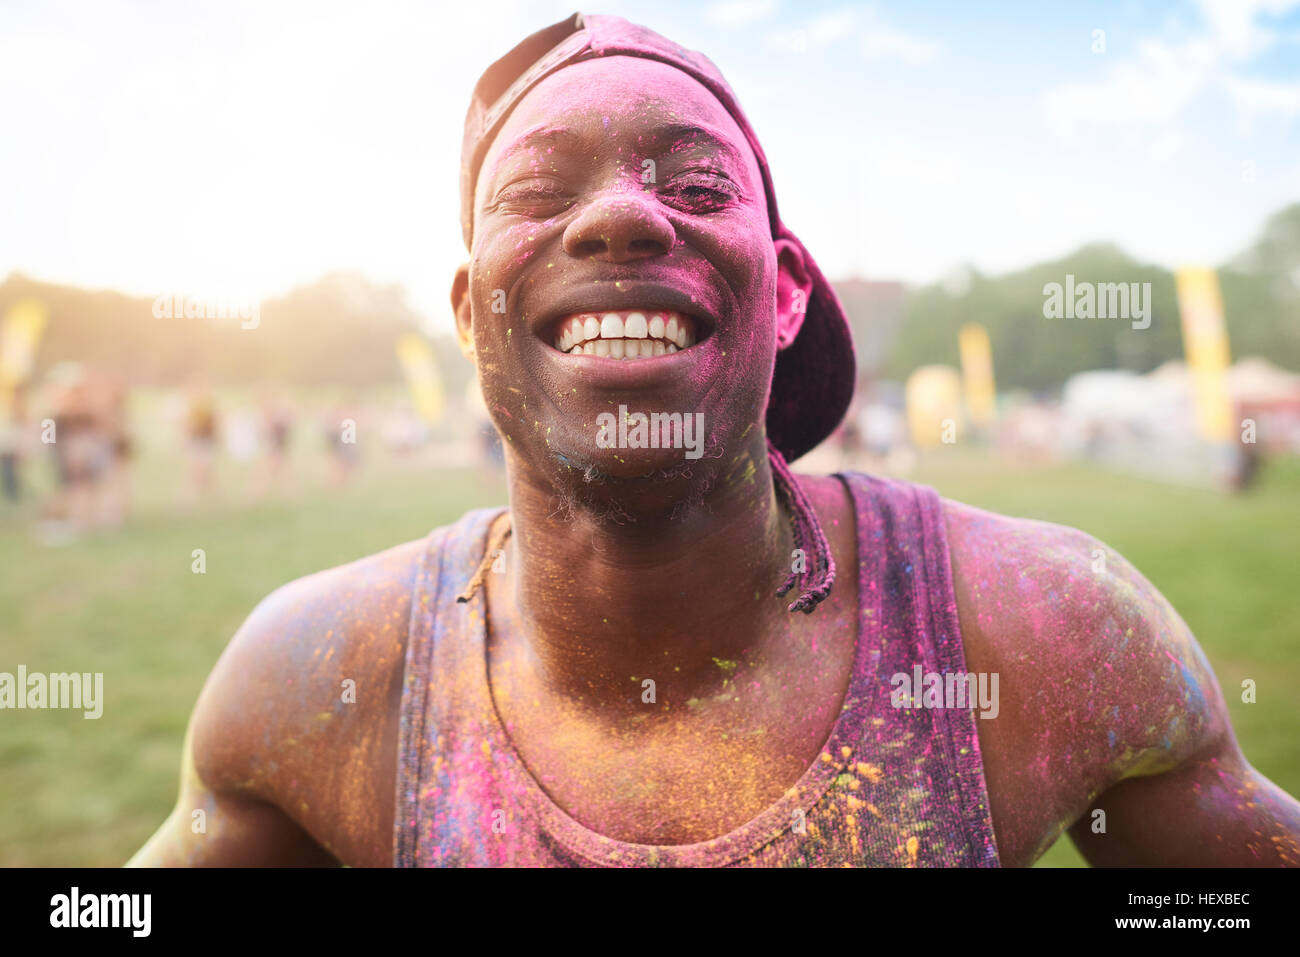 Ritratto di giovane uomo al festival, coperto di polvere colorata vernice Foto Stock